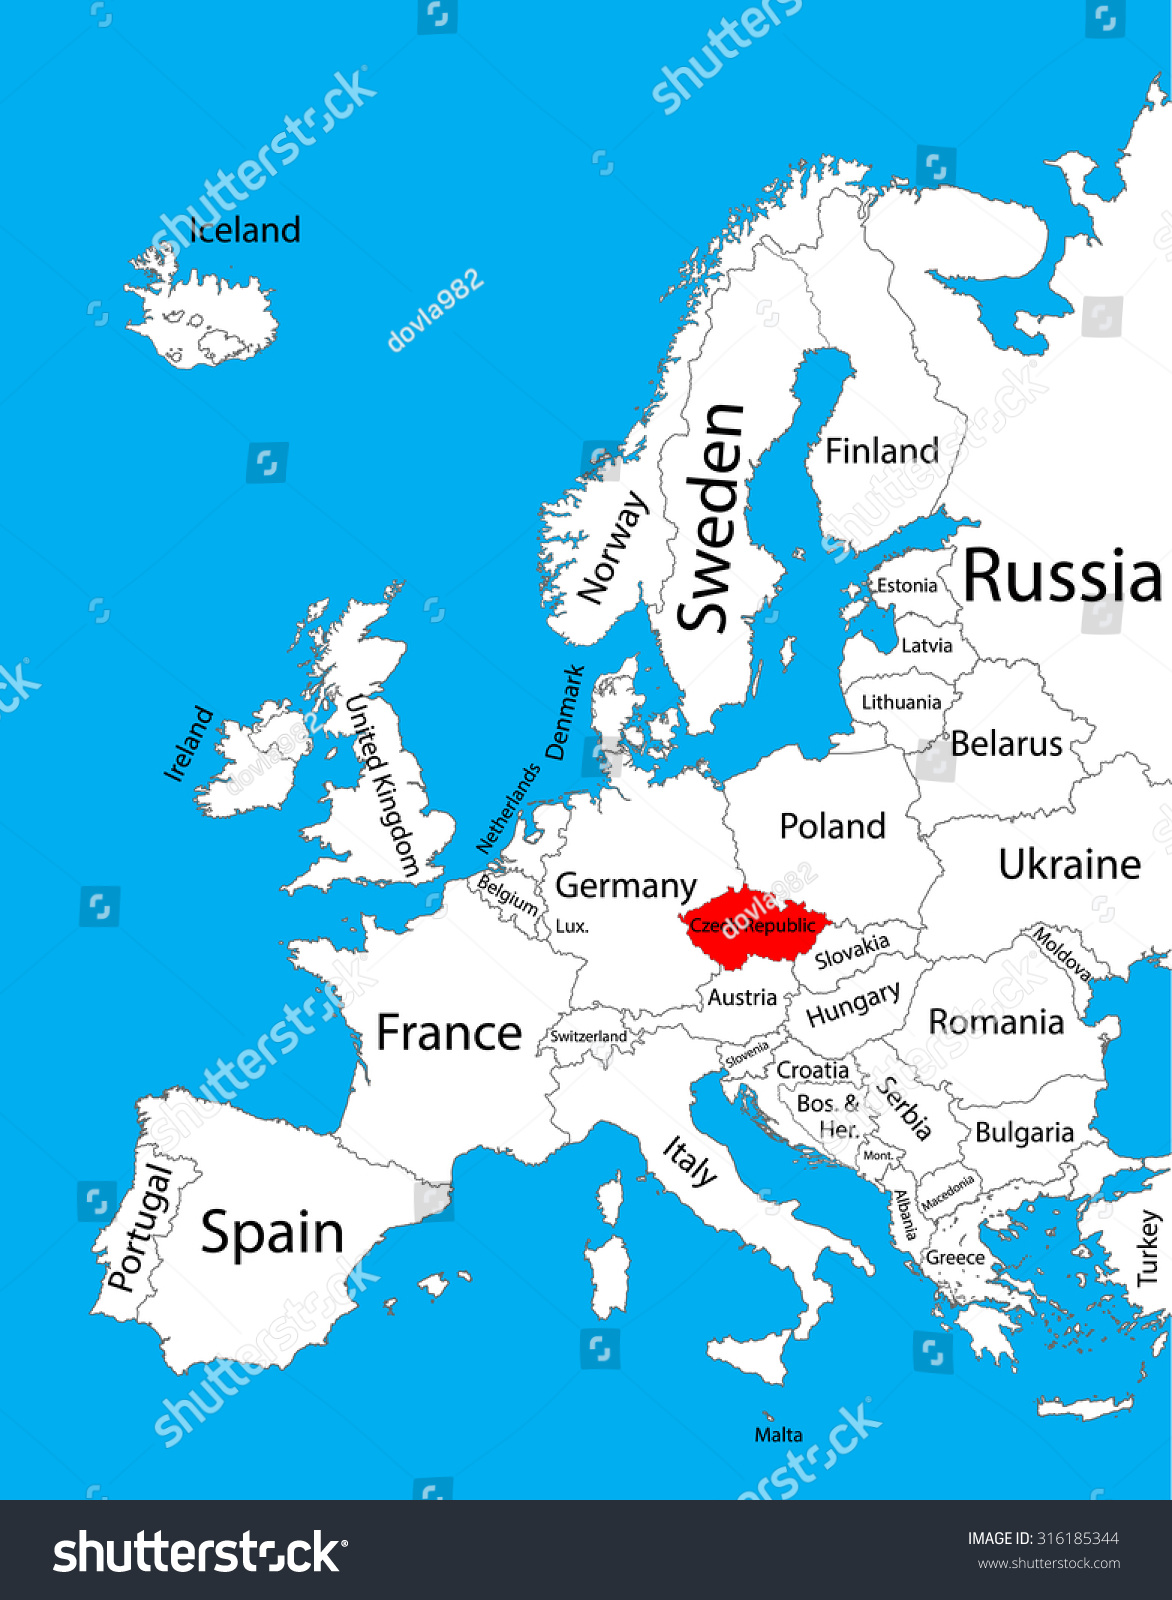 Czech Republic Vector Map Europe Vector Stock Vector Royalty Free